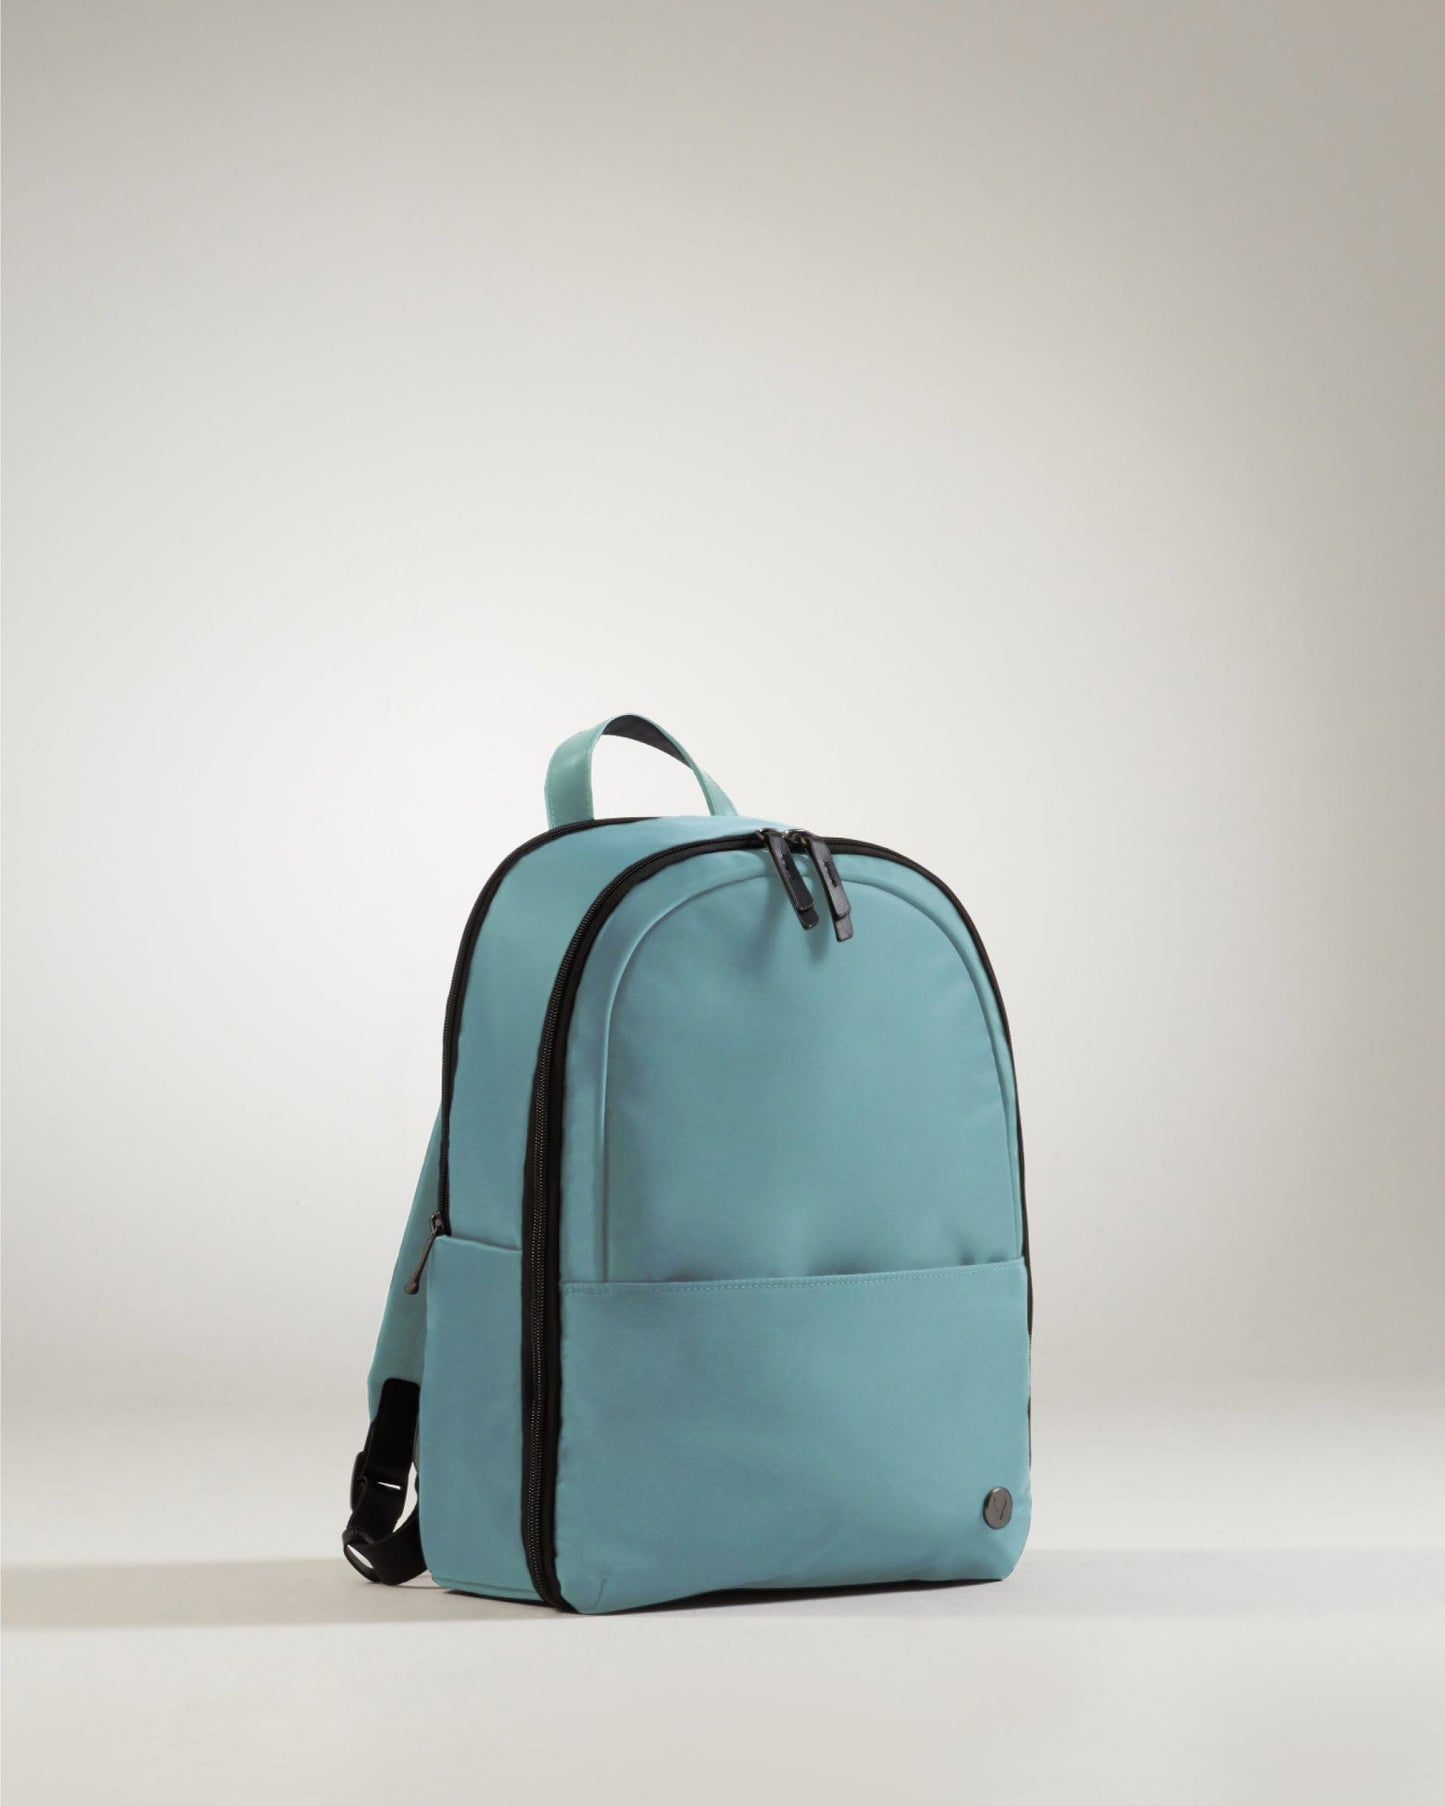 Antler Luggage -  Chelsea backpack in mineral - Backpacks Chelsea Backpack Mineral (Blue) | Travel & Lifestyle Bags | Antler UK